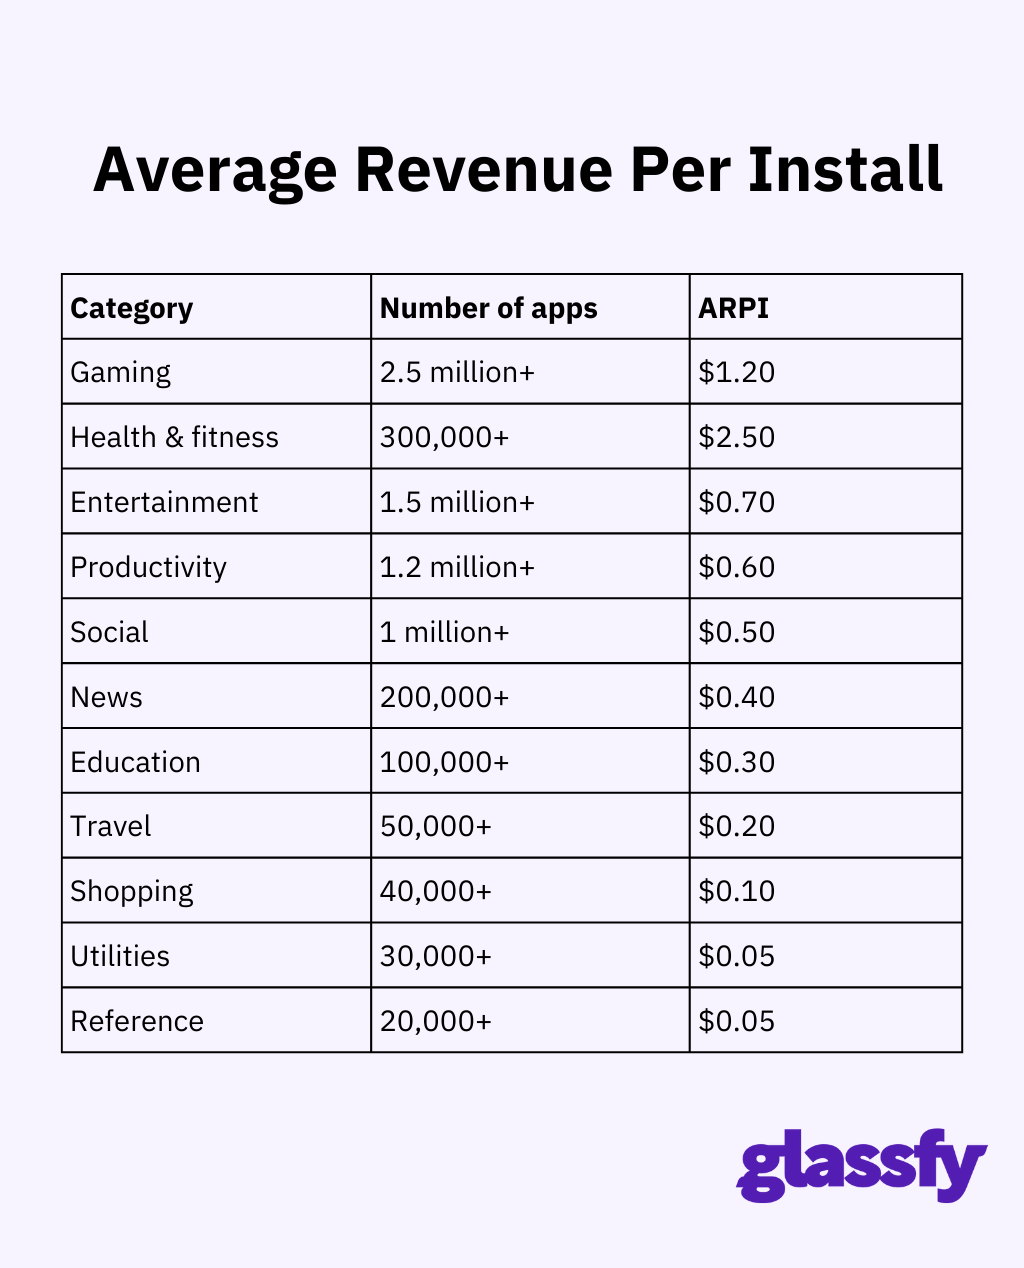 Average revenue per install